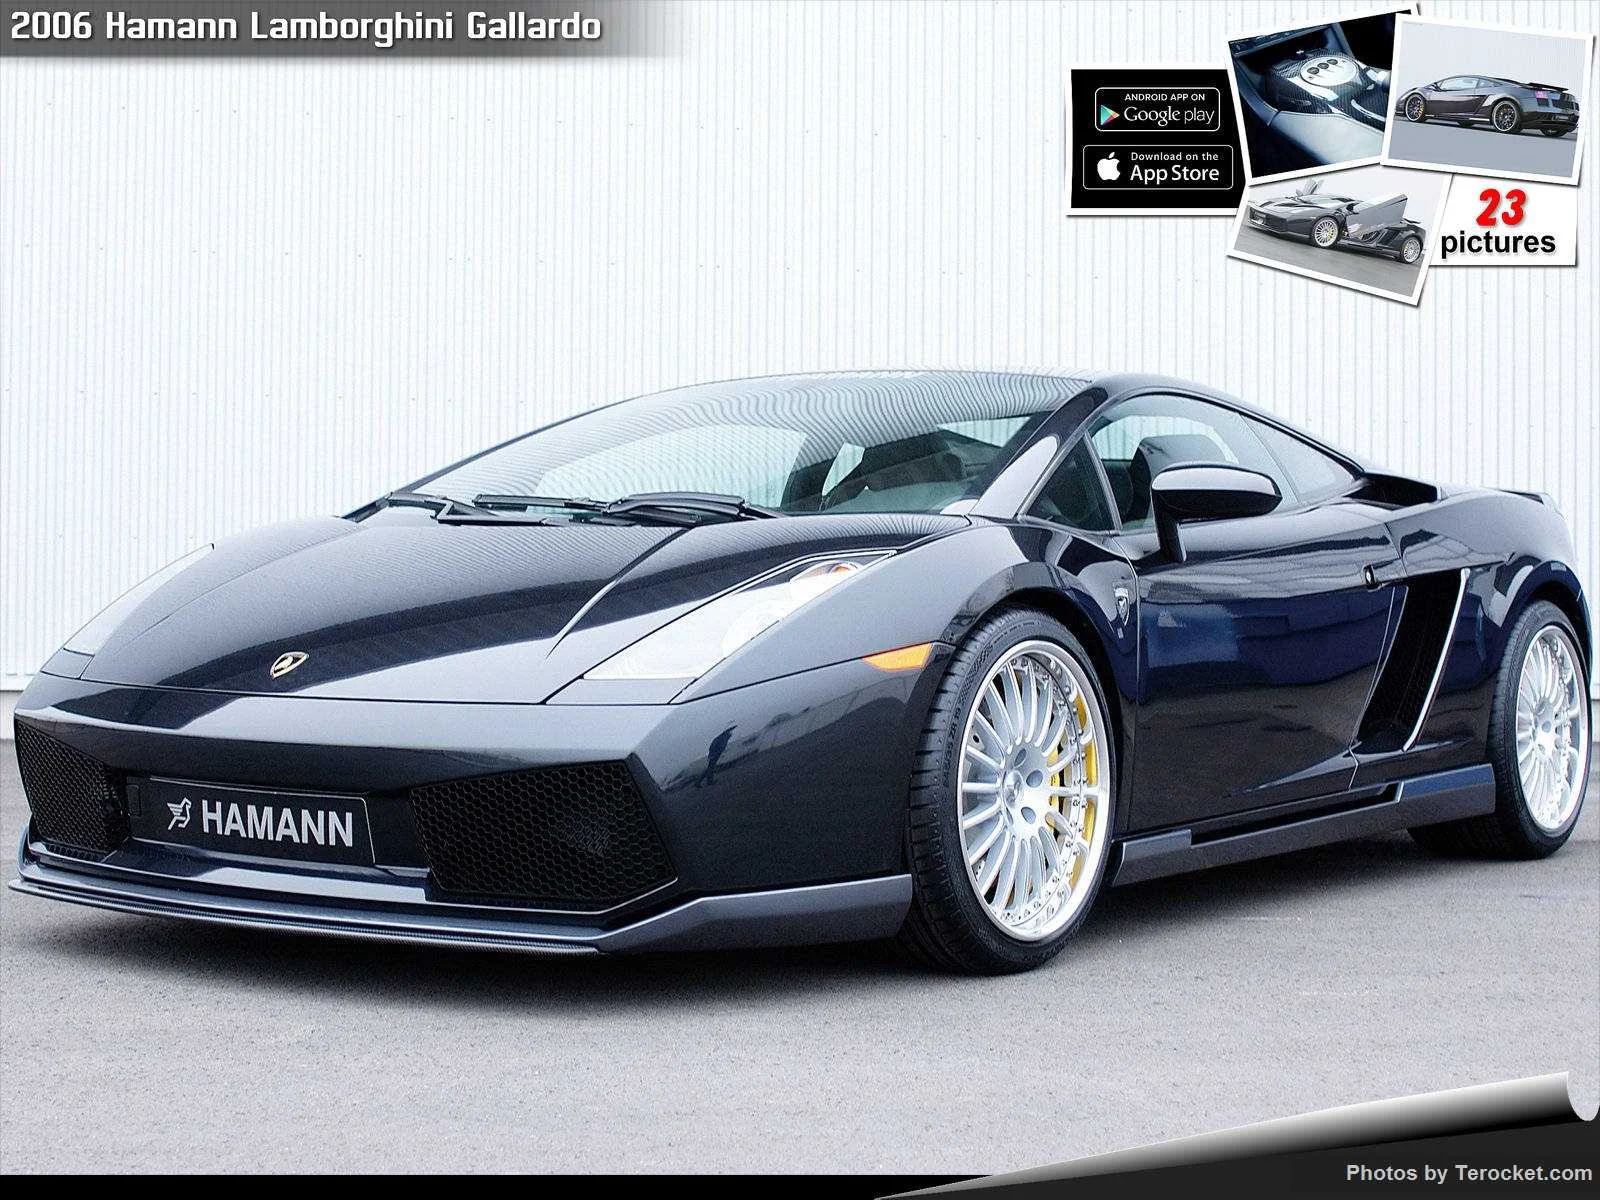 Hình ảnh xe ô tô Hamann Lamborghini Gallardo 2006 & nội ngoại thất